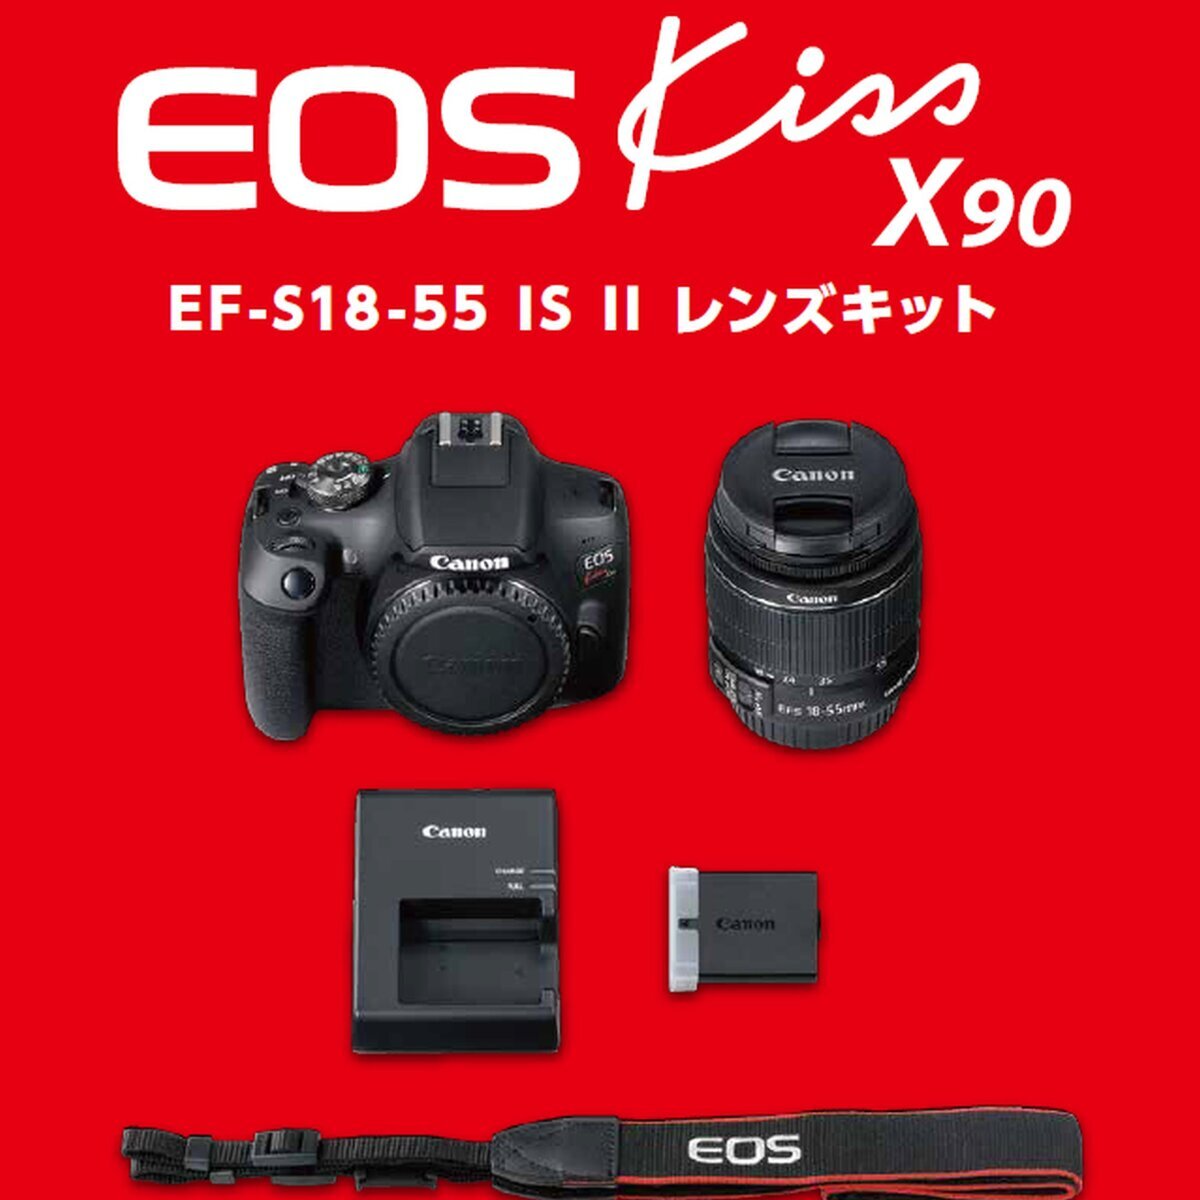 Canon EOS Kiss 本体 + レンズキット X90 | Costco Japan